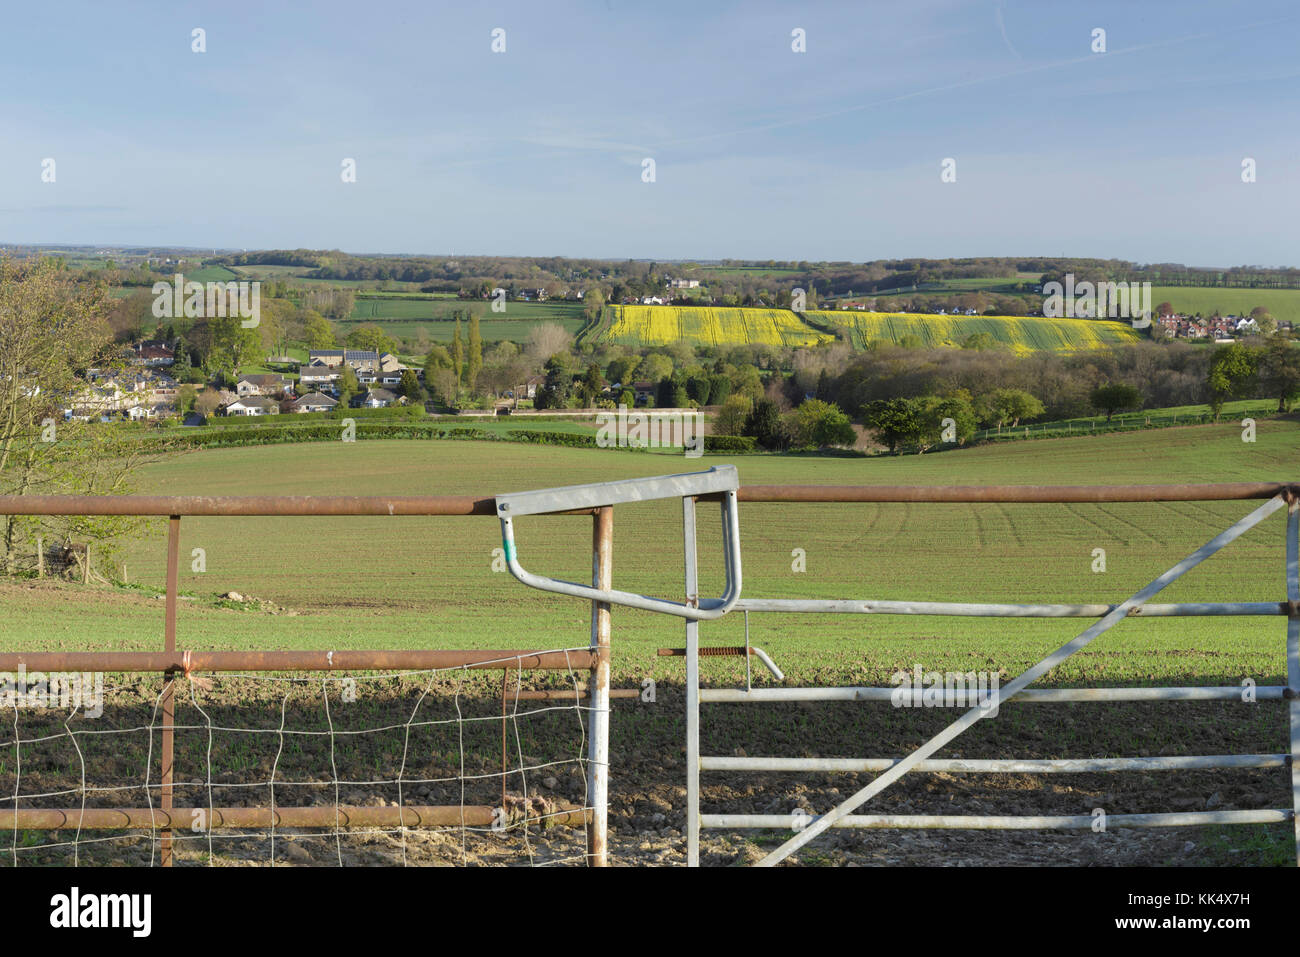 Gatter geschlossen am Rand des Getreidefeld, Ackerland, auf der Suche nach Bardsey, Osten Rigton, West Yorkshire, England, April Stockfoto